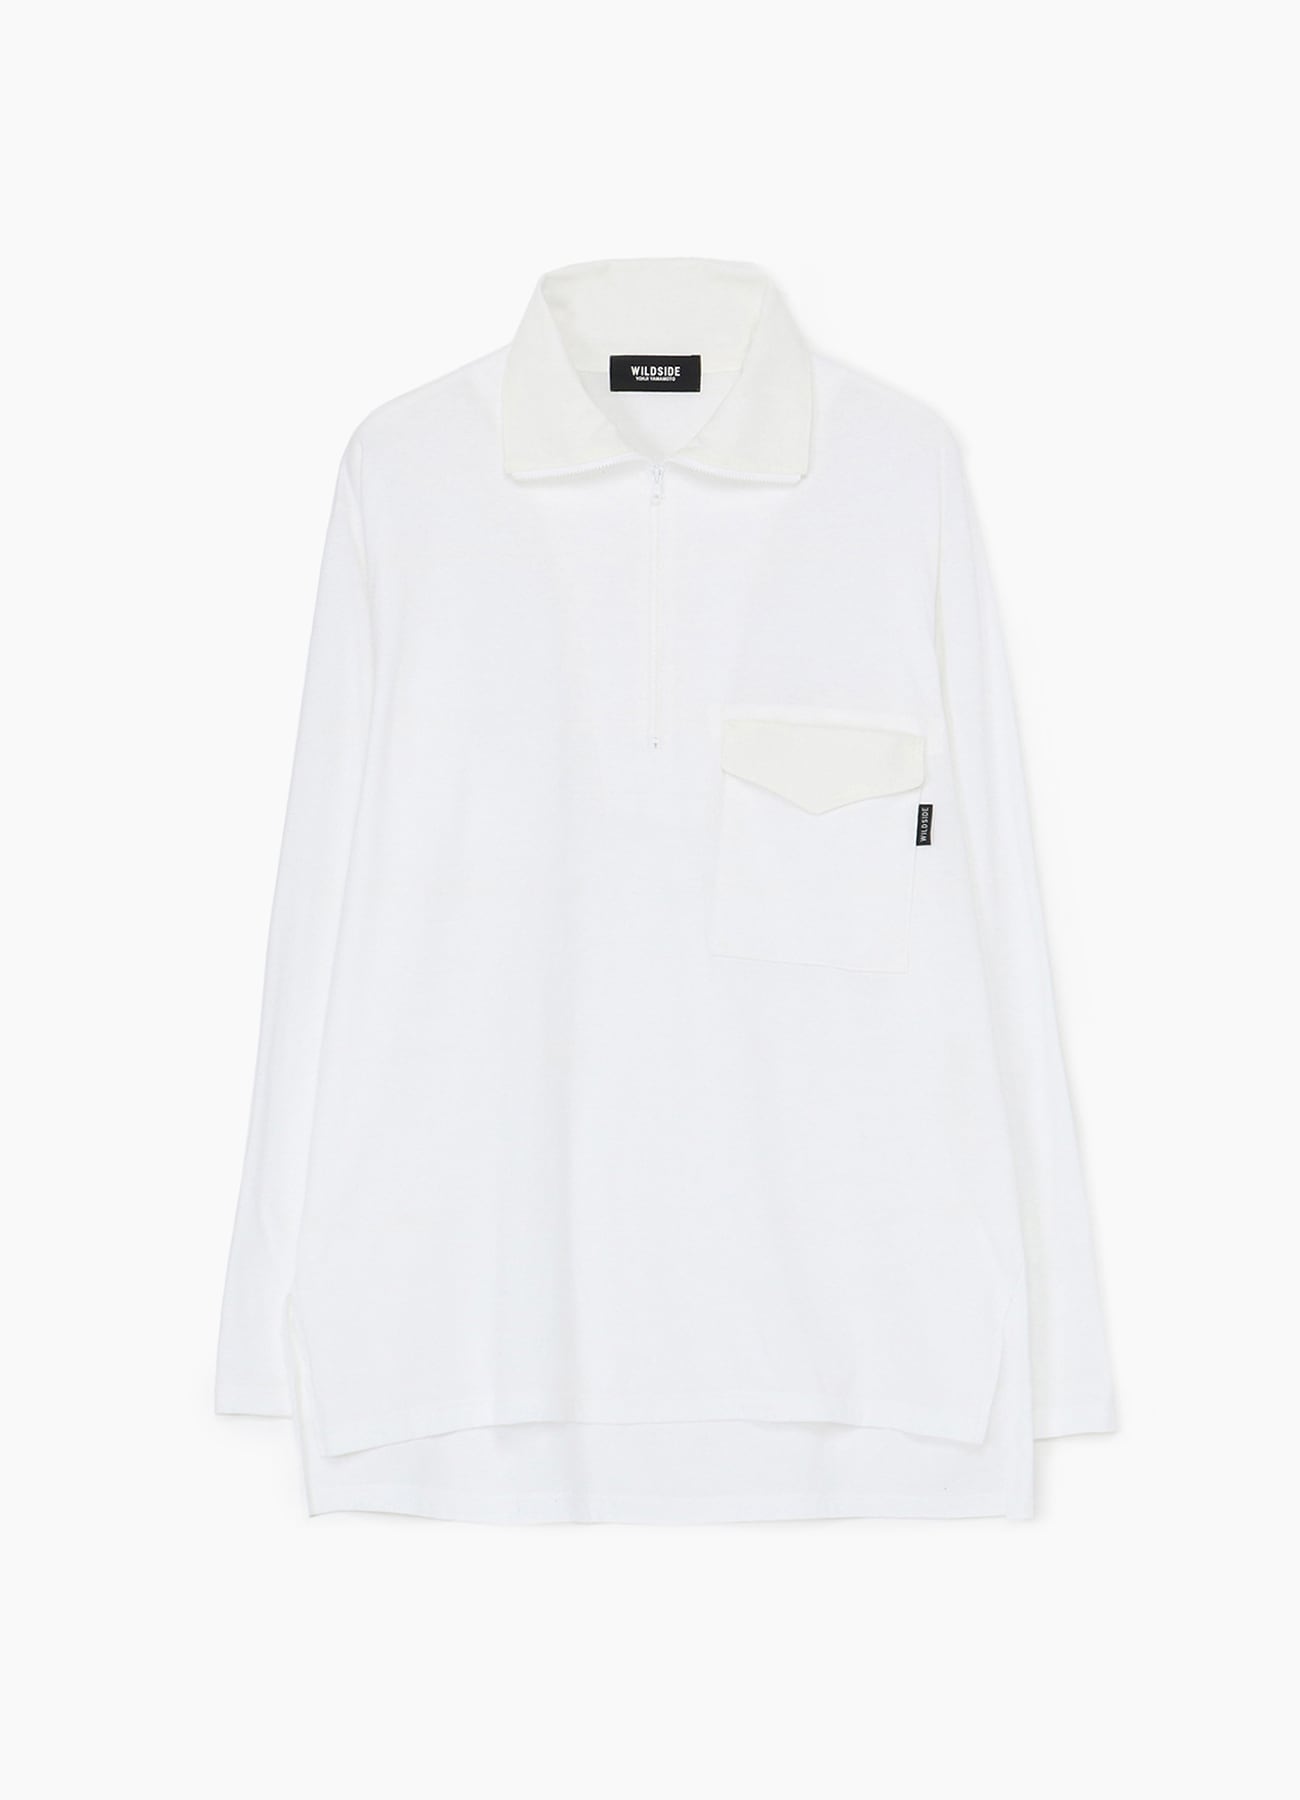 Cotton Jersey Half Zip Long Sleeve T-shirt